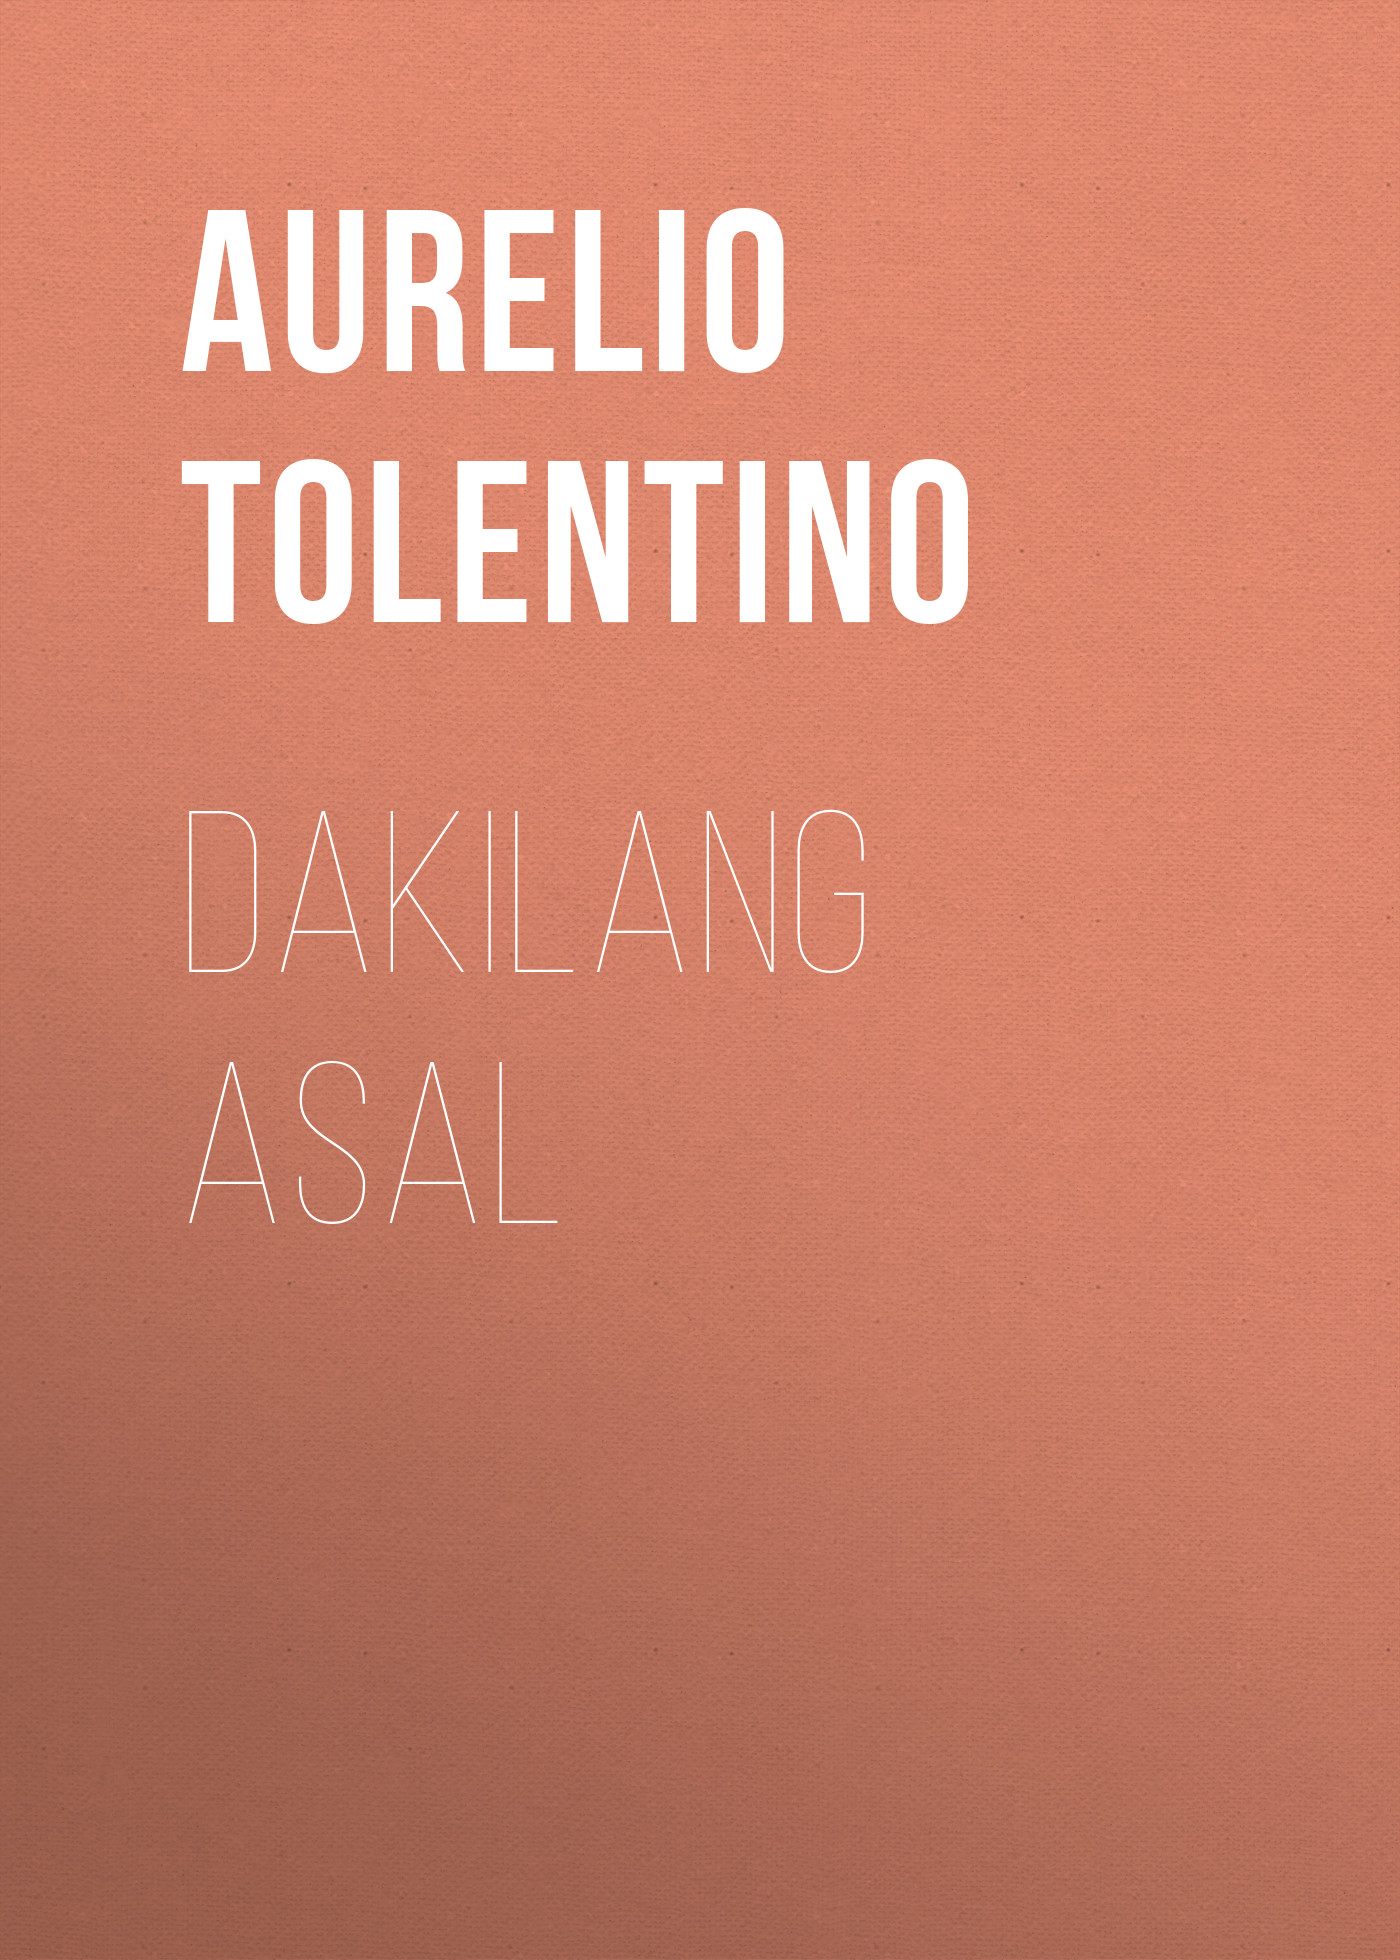 Книга Dakilang Asal из серии , созданная Aurelio Tolentino, может относится к жанру Зарубежные стихи, Поэзия, Зарубежная старинная литература, Зарубежная классика. Стоимость электронной книги Dakilang Asal с идентификатором 36324684 составляет 0 руб.